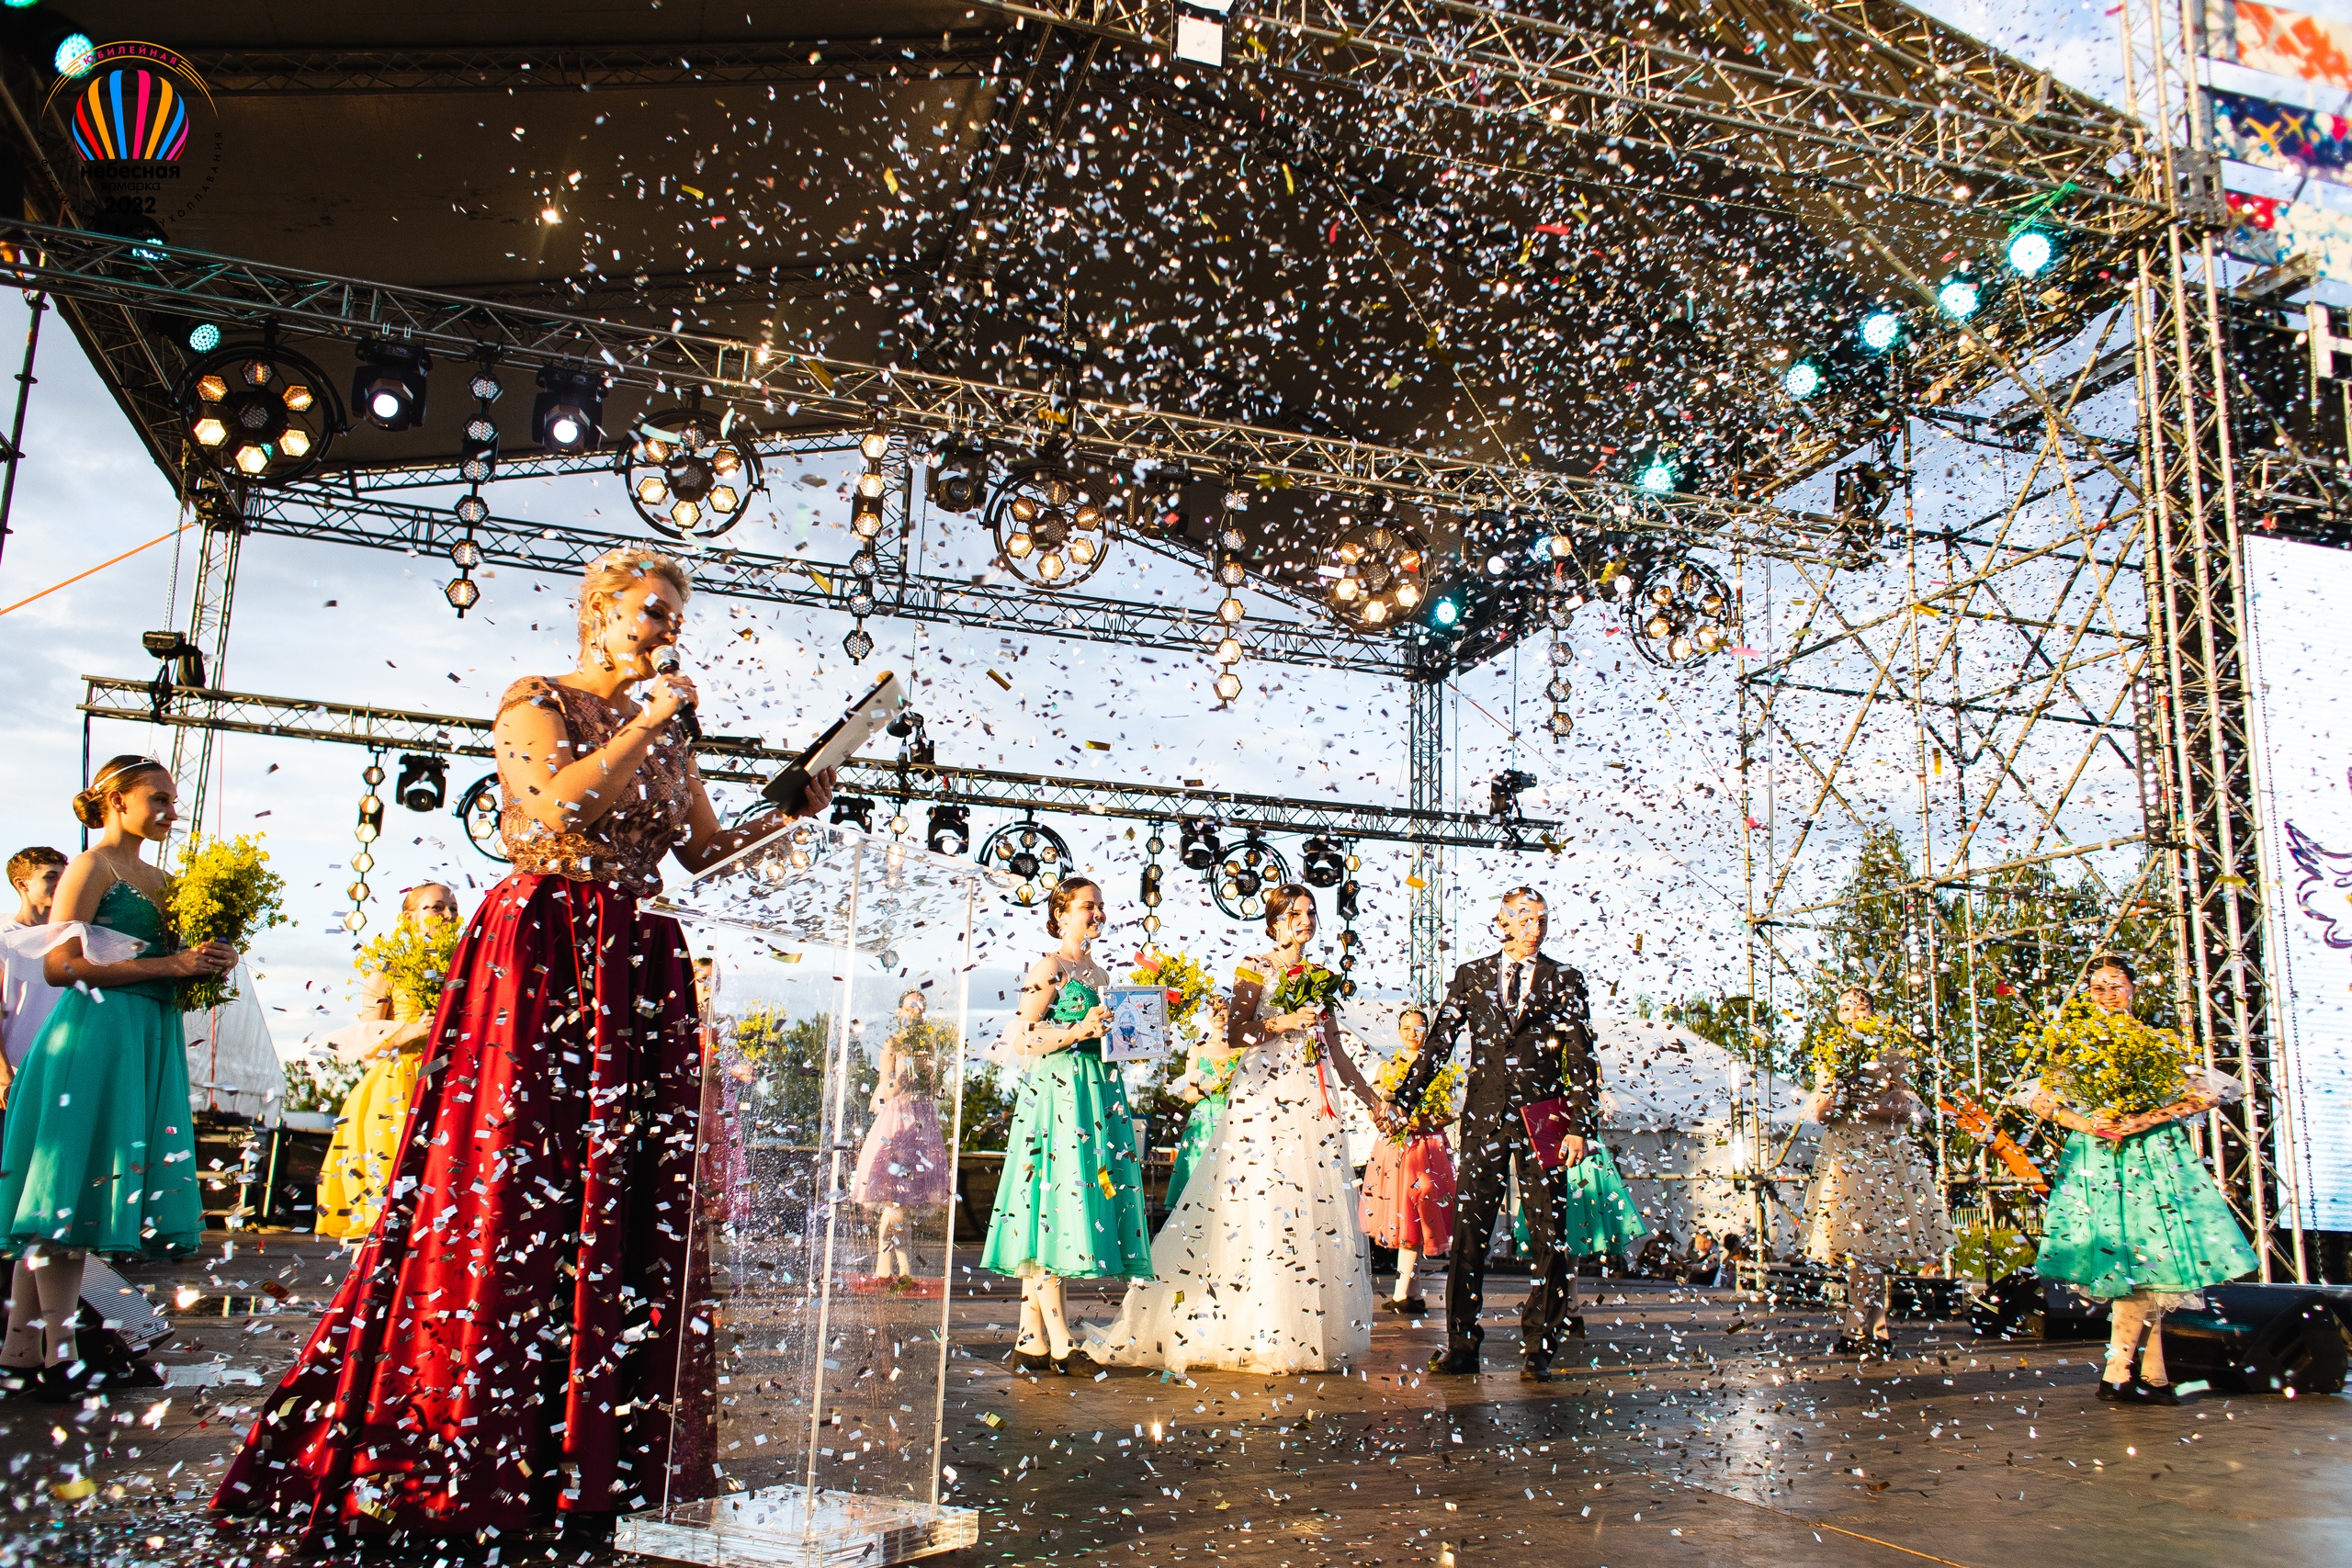 Андрей и Анастасия поженилась накануне, организаторы фестиваля захотели поздравить их, пригласив на сцену